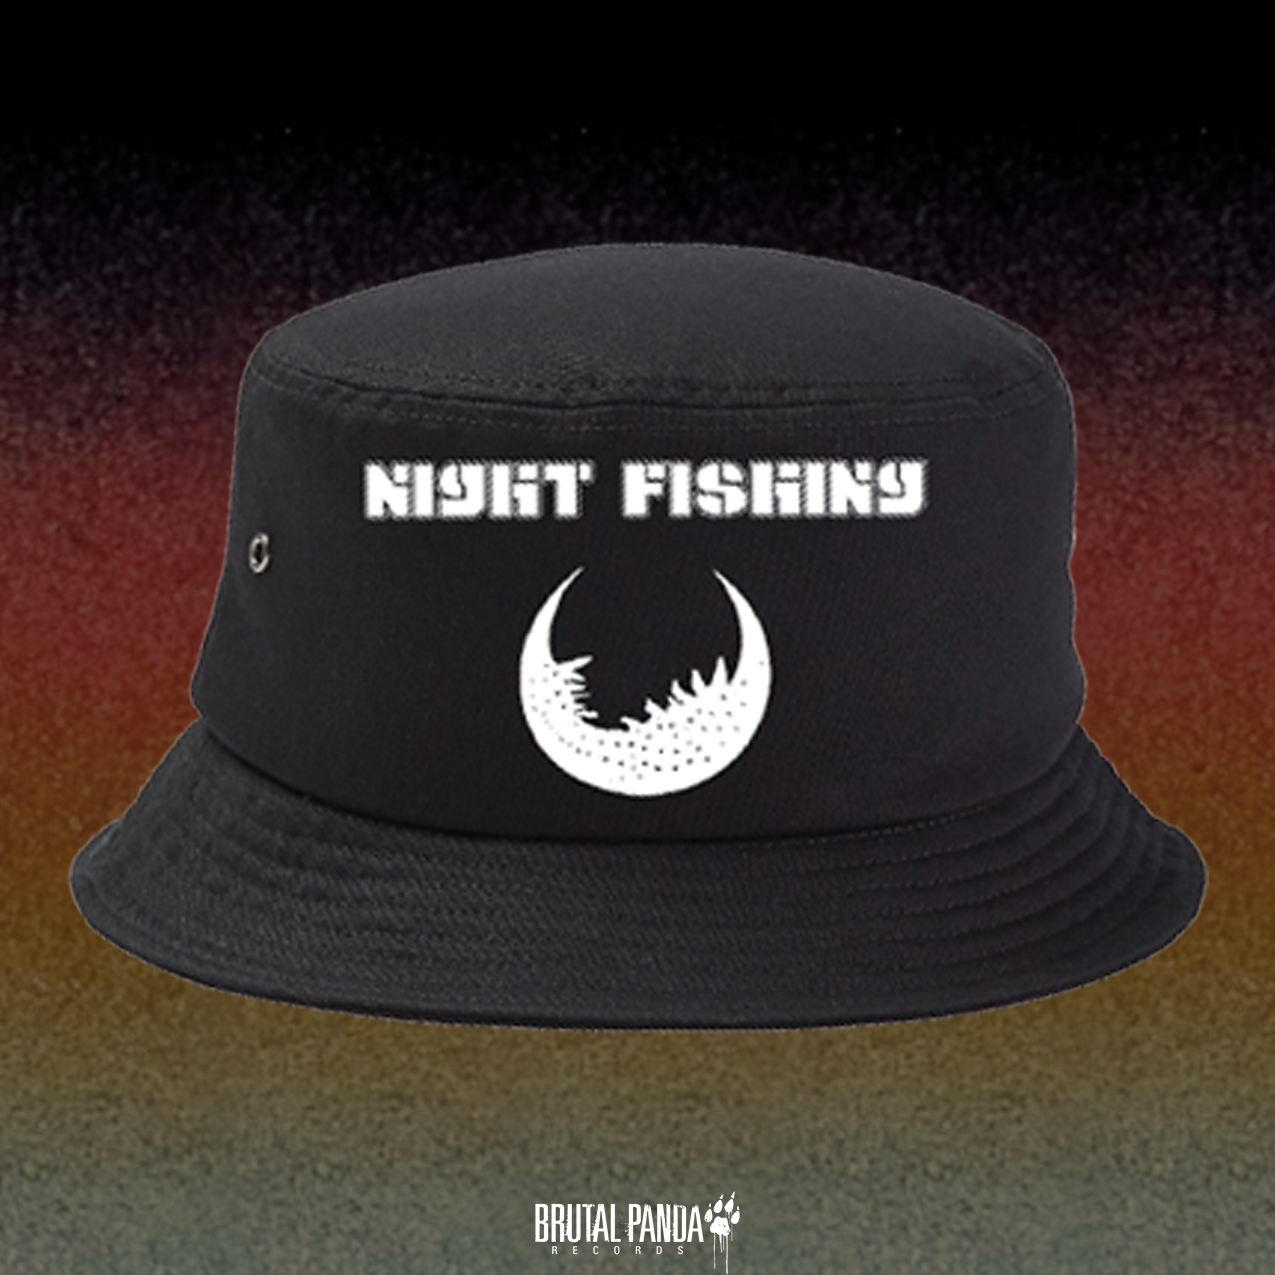 NIGHT FISHING - Bucket / Trucker Hat – Brutal Panda Records